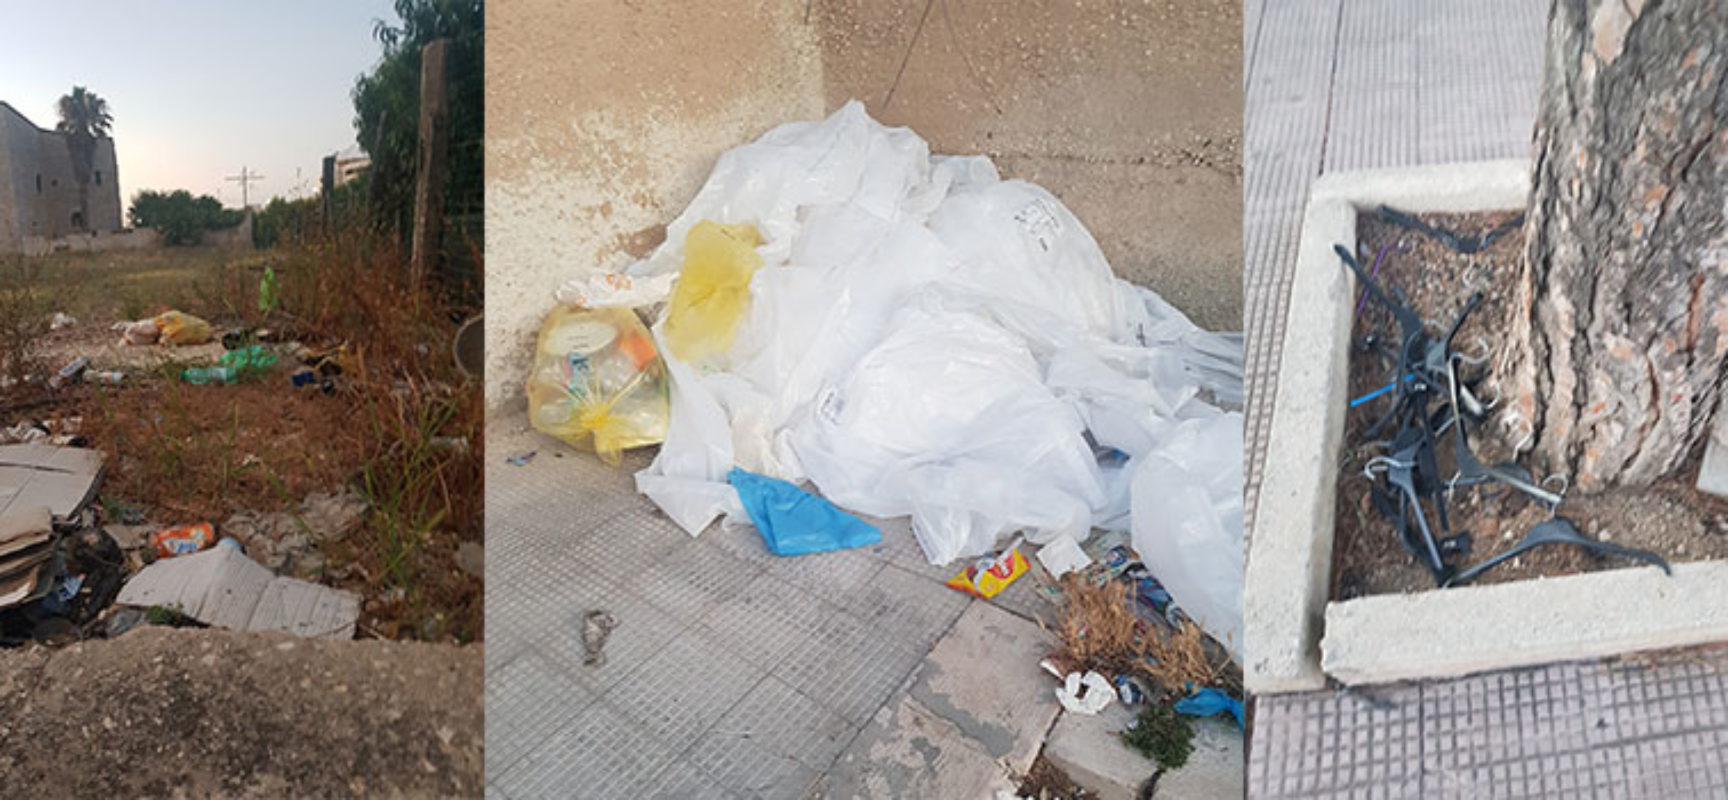 Cittadina scrive a Bisceglie24, “Continua presenza di rifiuti in zona mercato settimanale” / FOTO